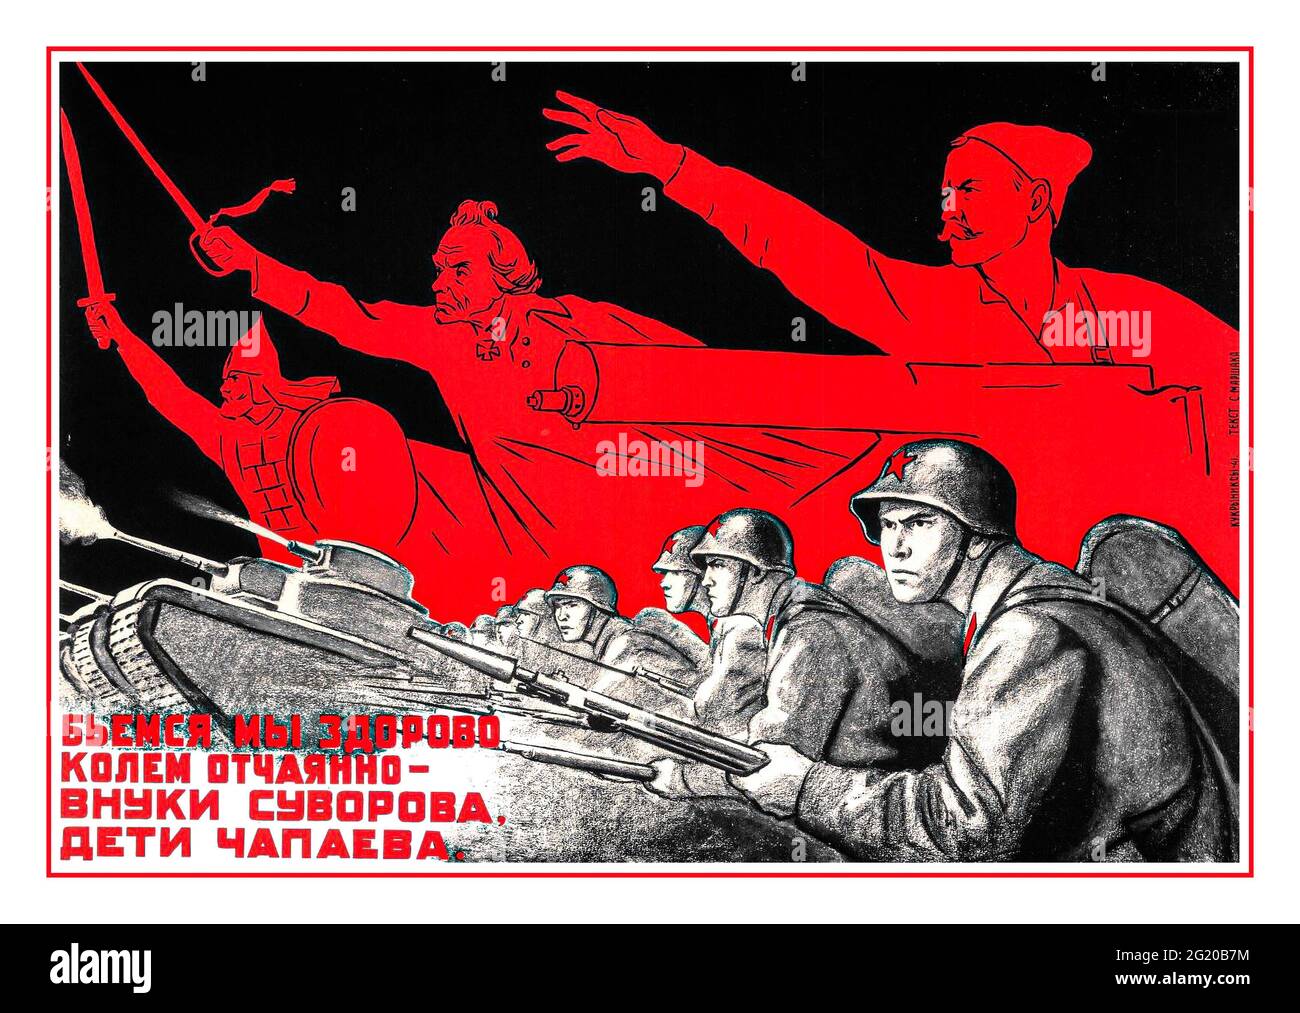 Affiche de propagande russe soviétique faisant référence à des actes de bravoure russes historiques 1942. Banque D'Images